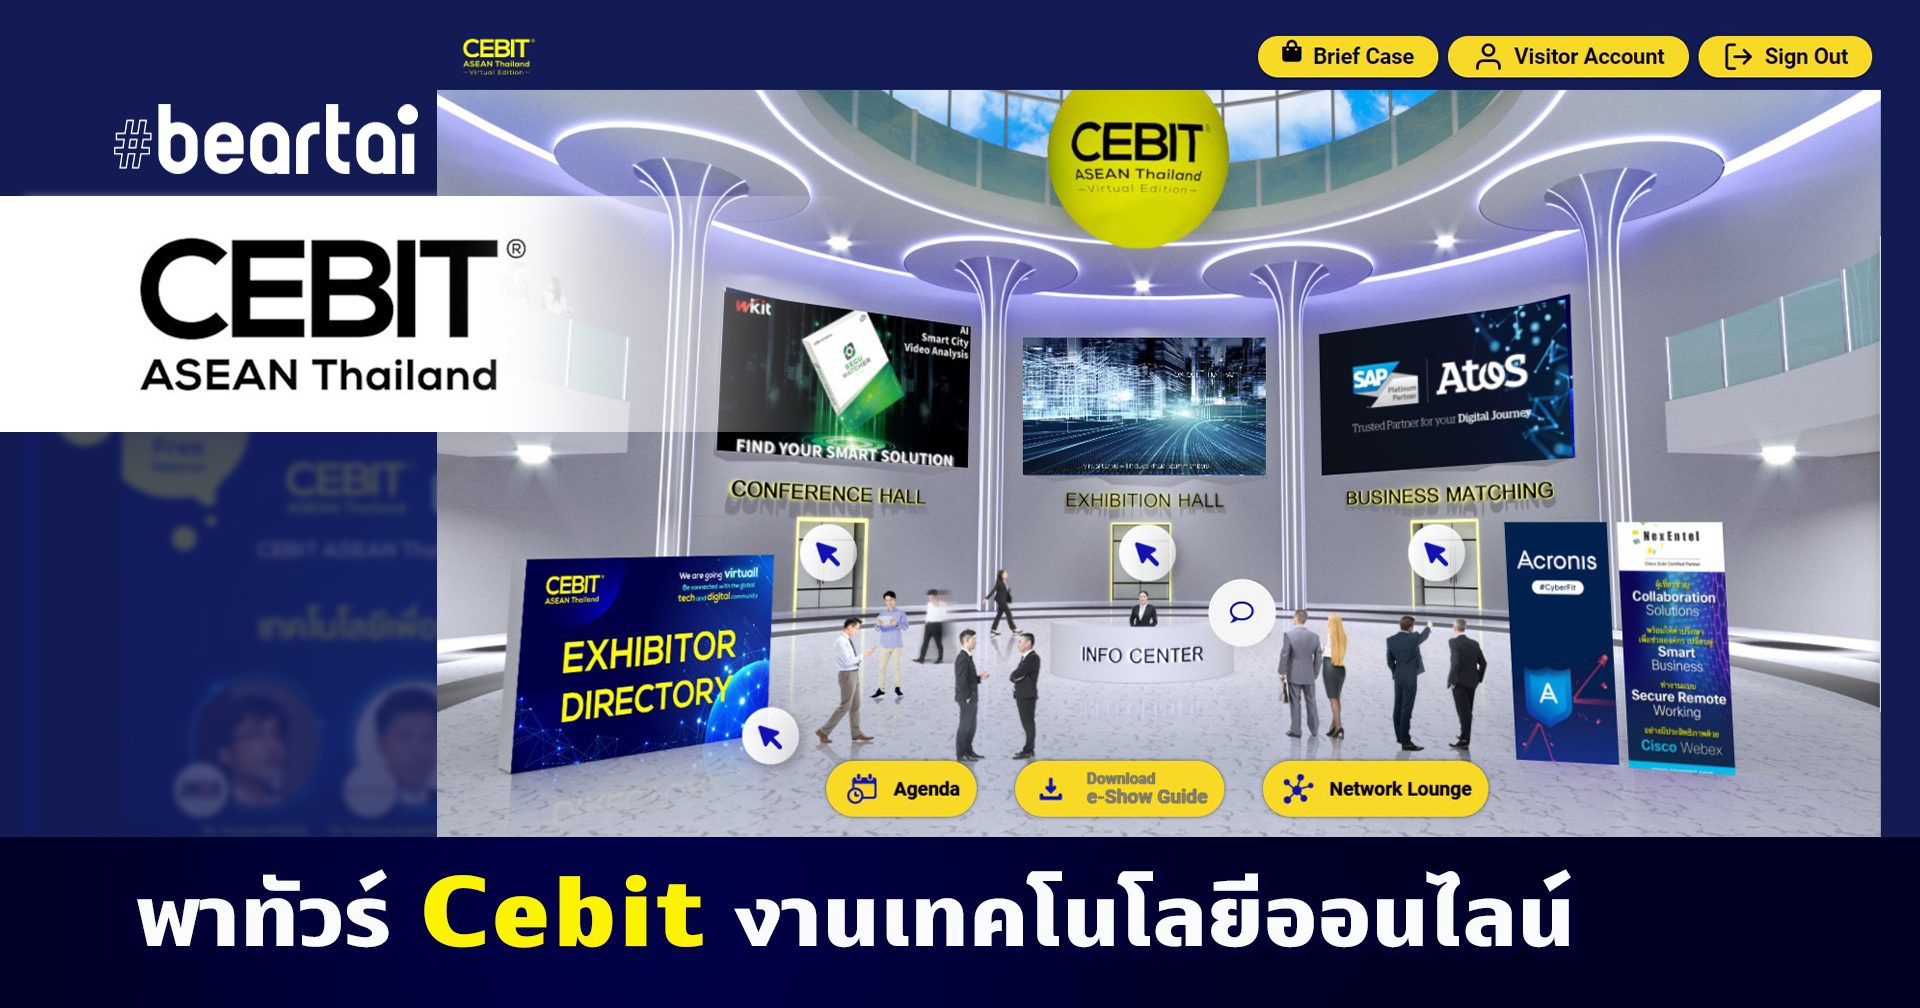 ยลโฉม CEBIT ASEAN 2020 งานเทคโนโลยีออนไลน์ครั้งแรกของอาเซียน !